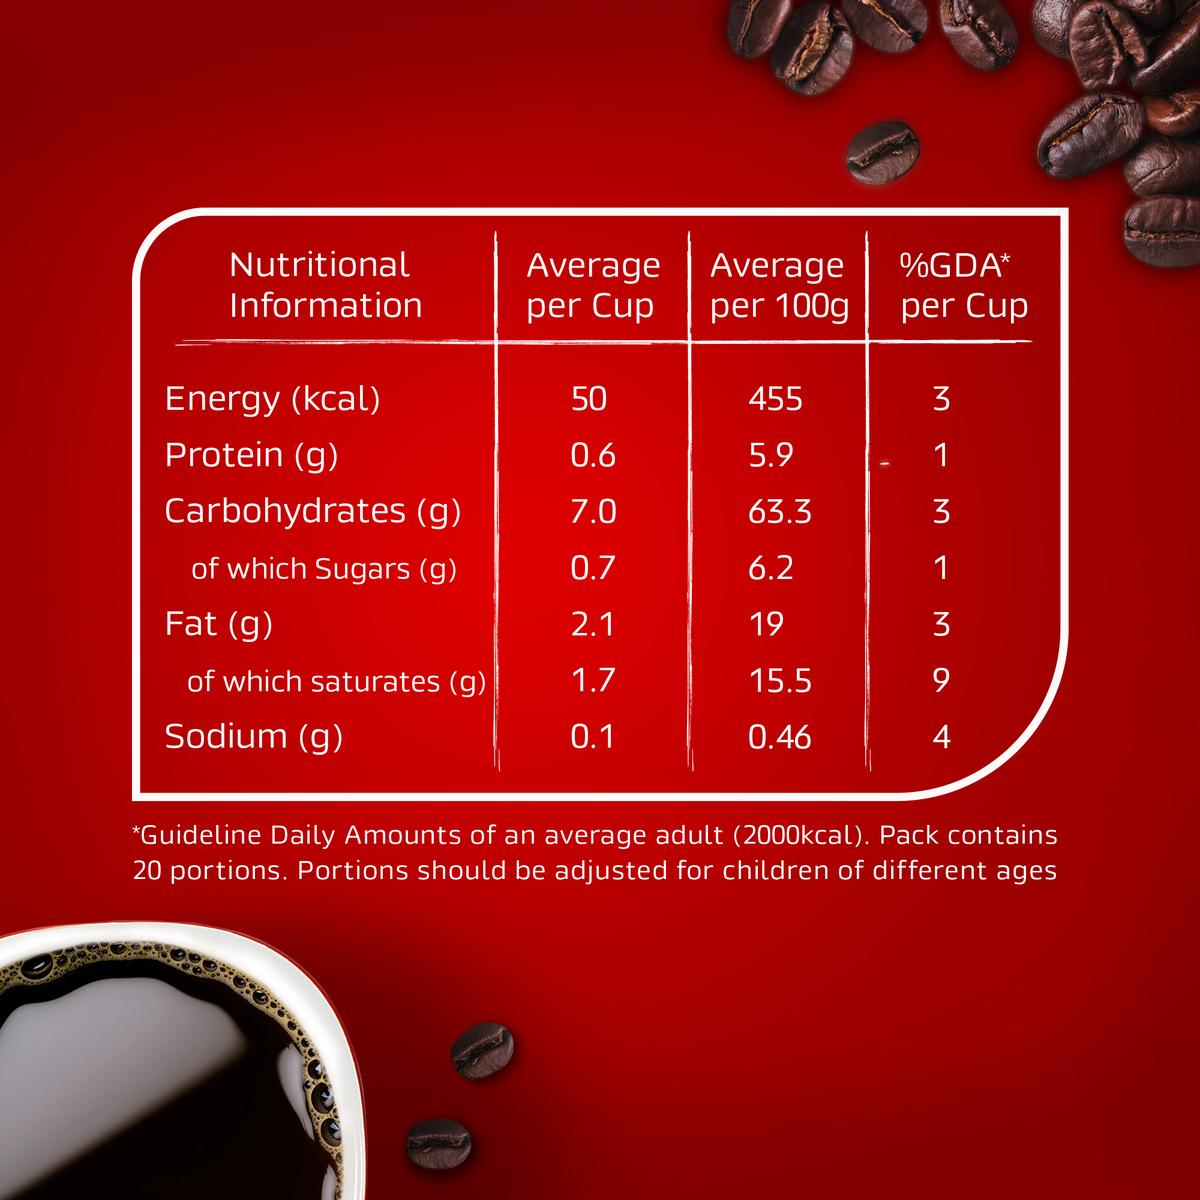 Nescafe Red Mug Instant Coffee 47.5 g